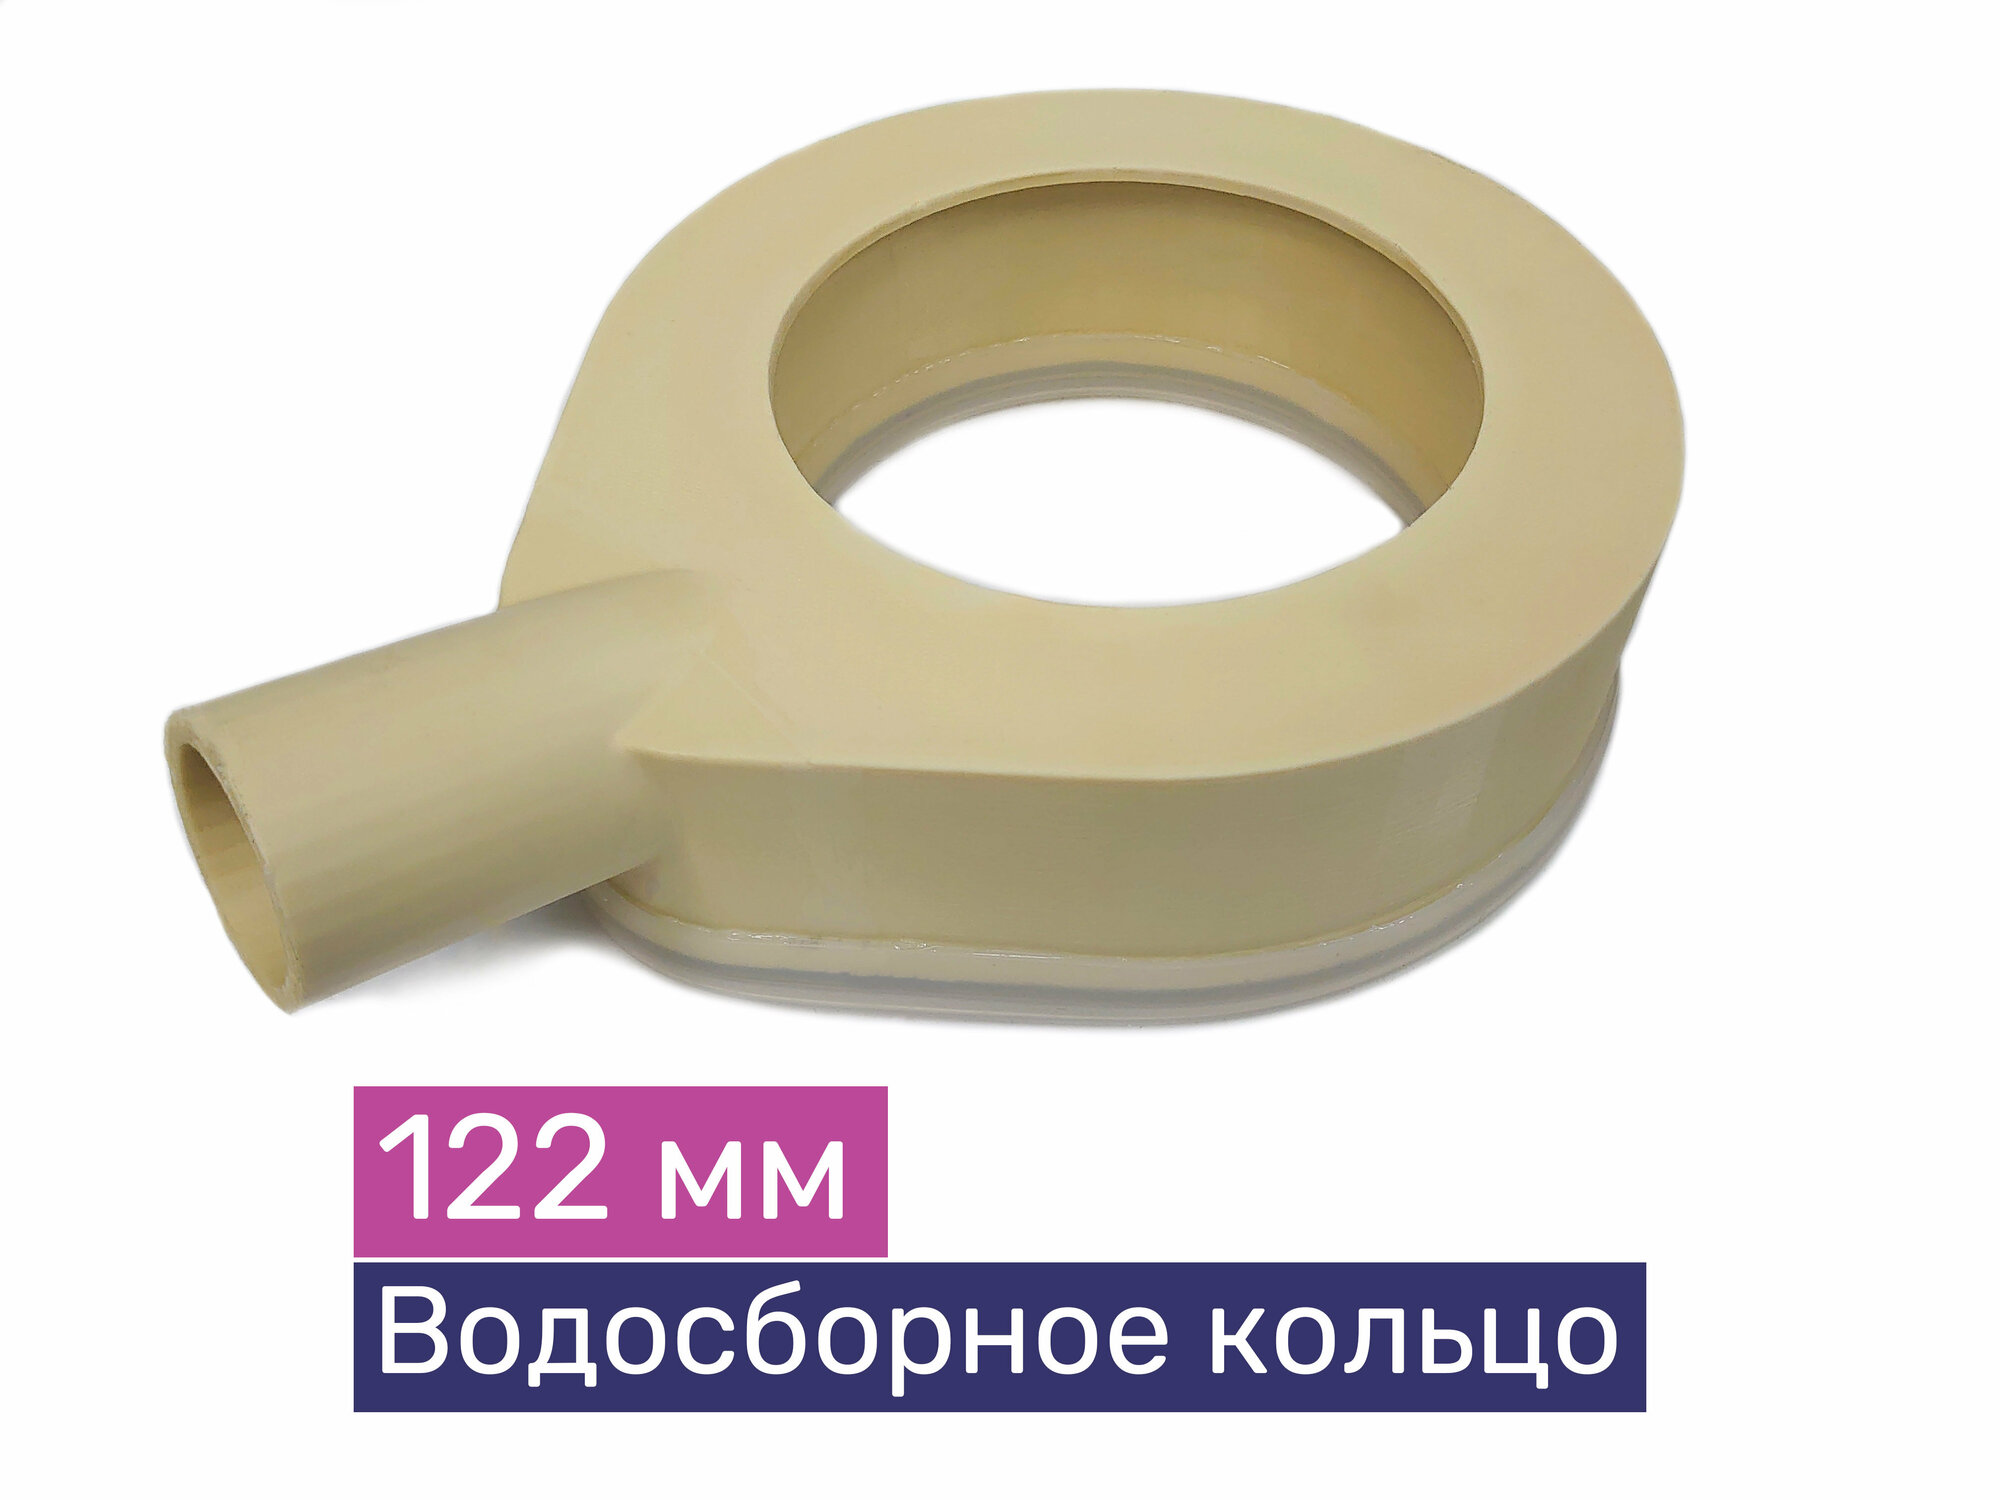 Водосборное кольцо для алмазного бурения ф122 мм Exla